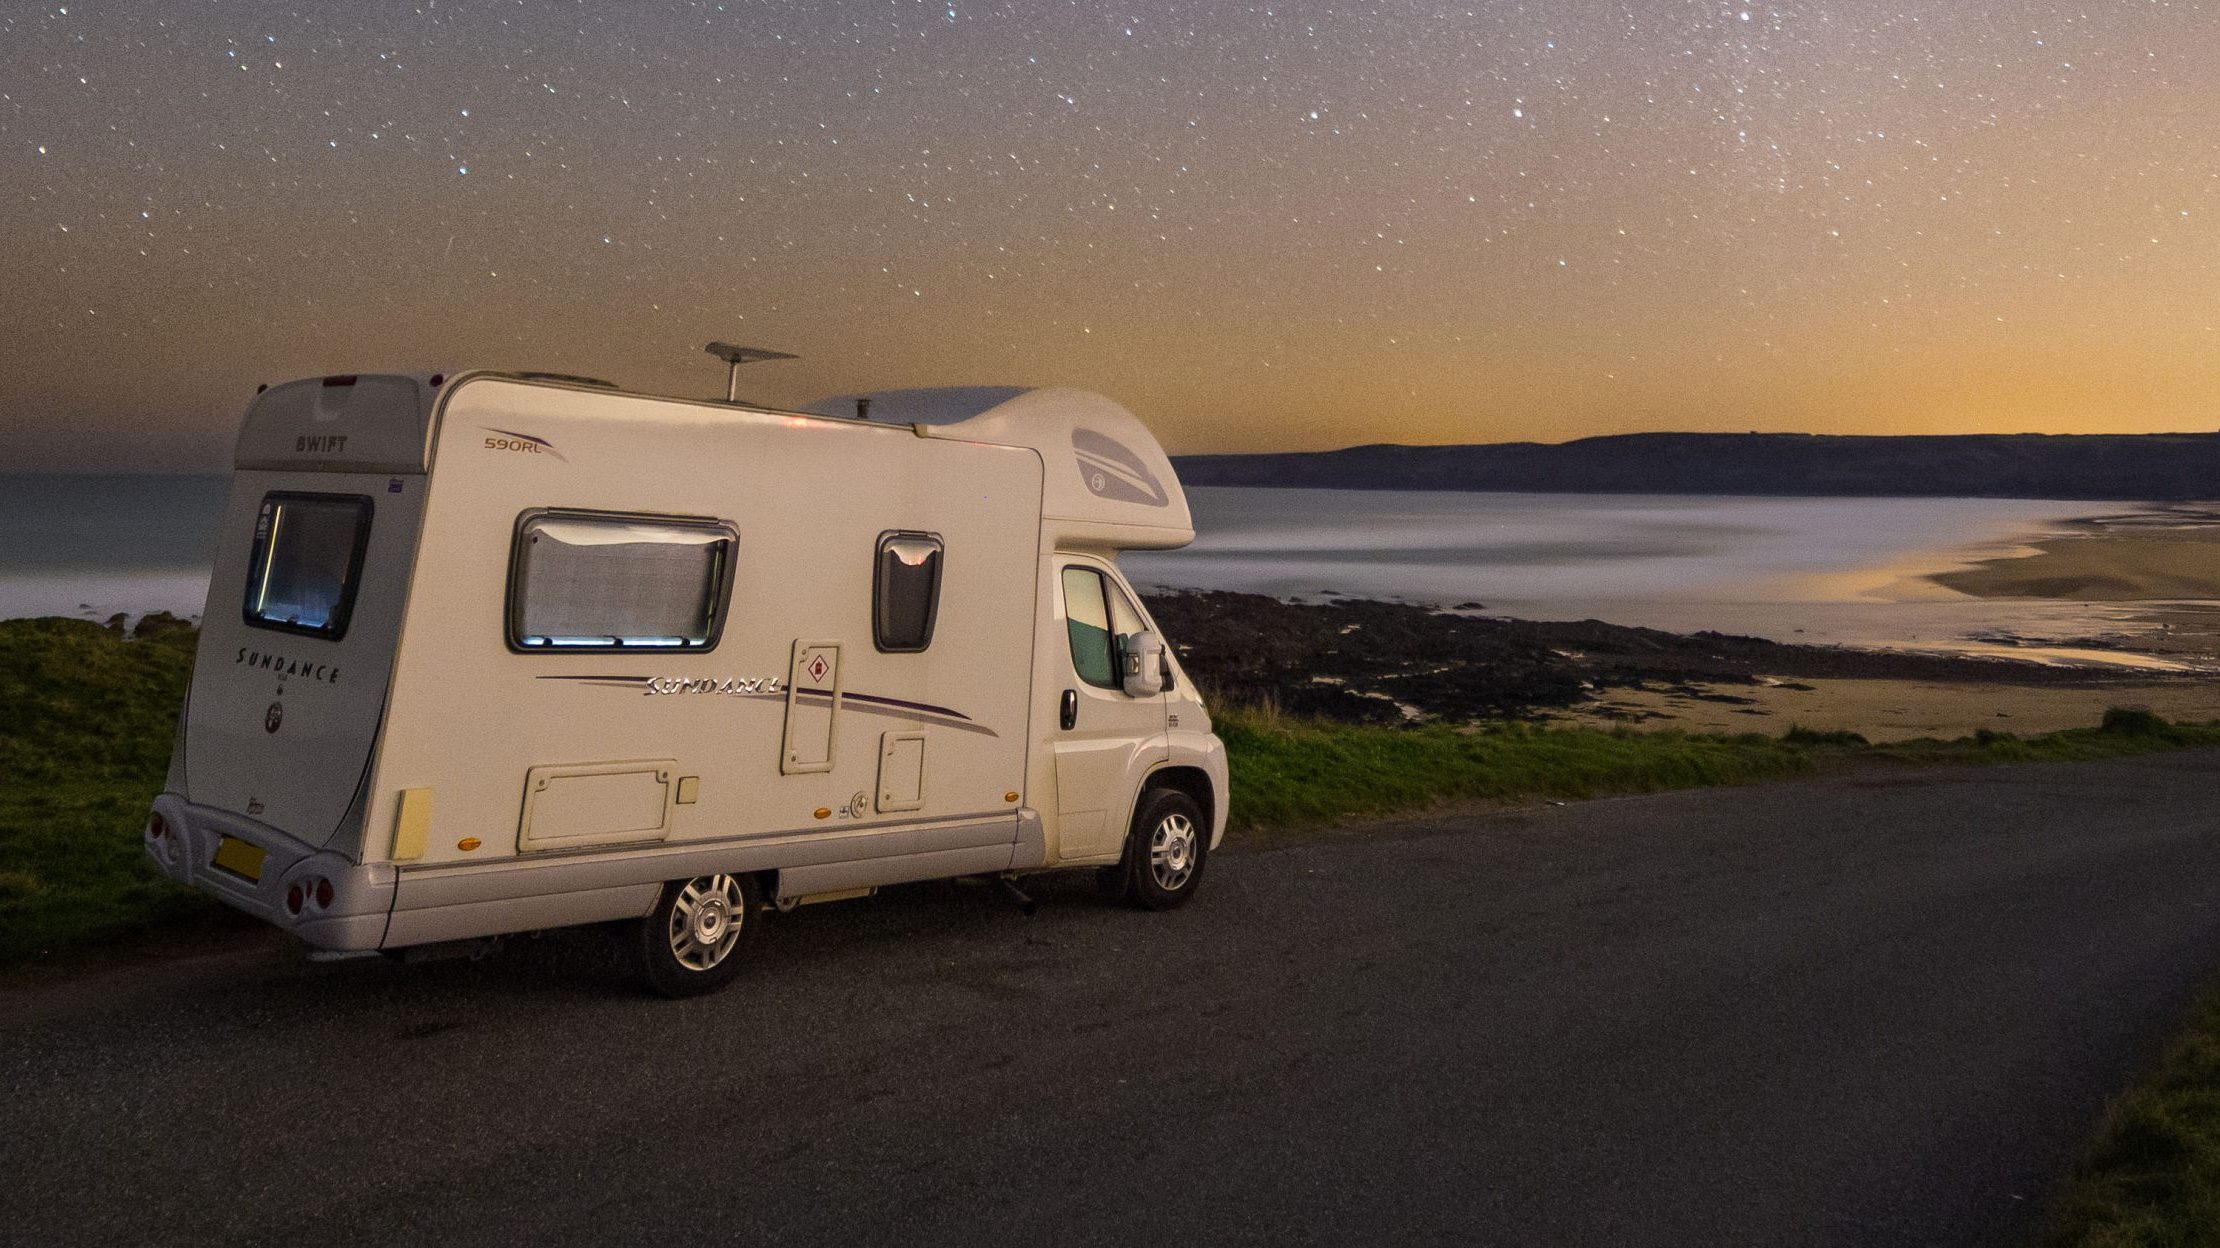 Campervan parked near coastline at dusk